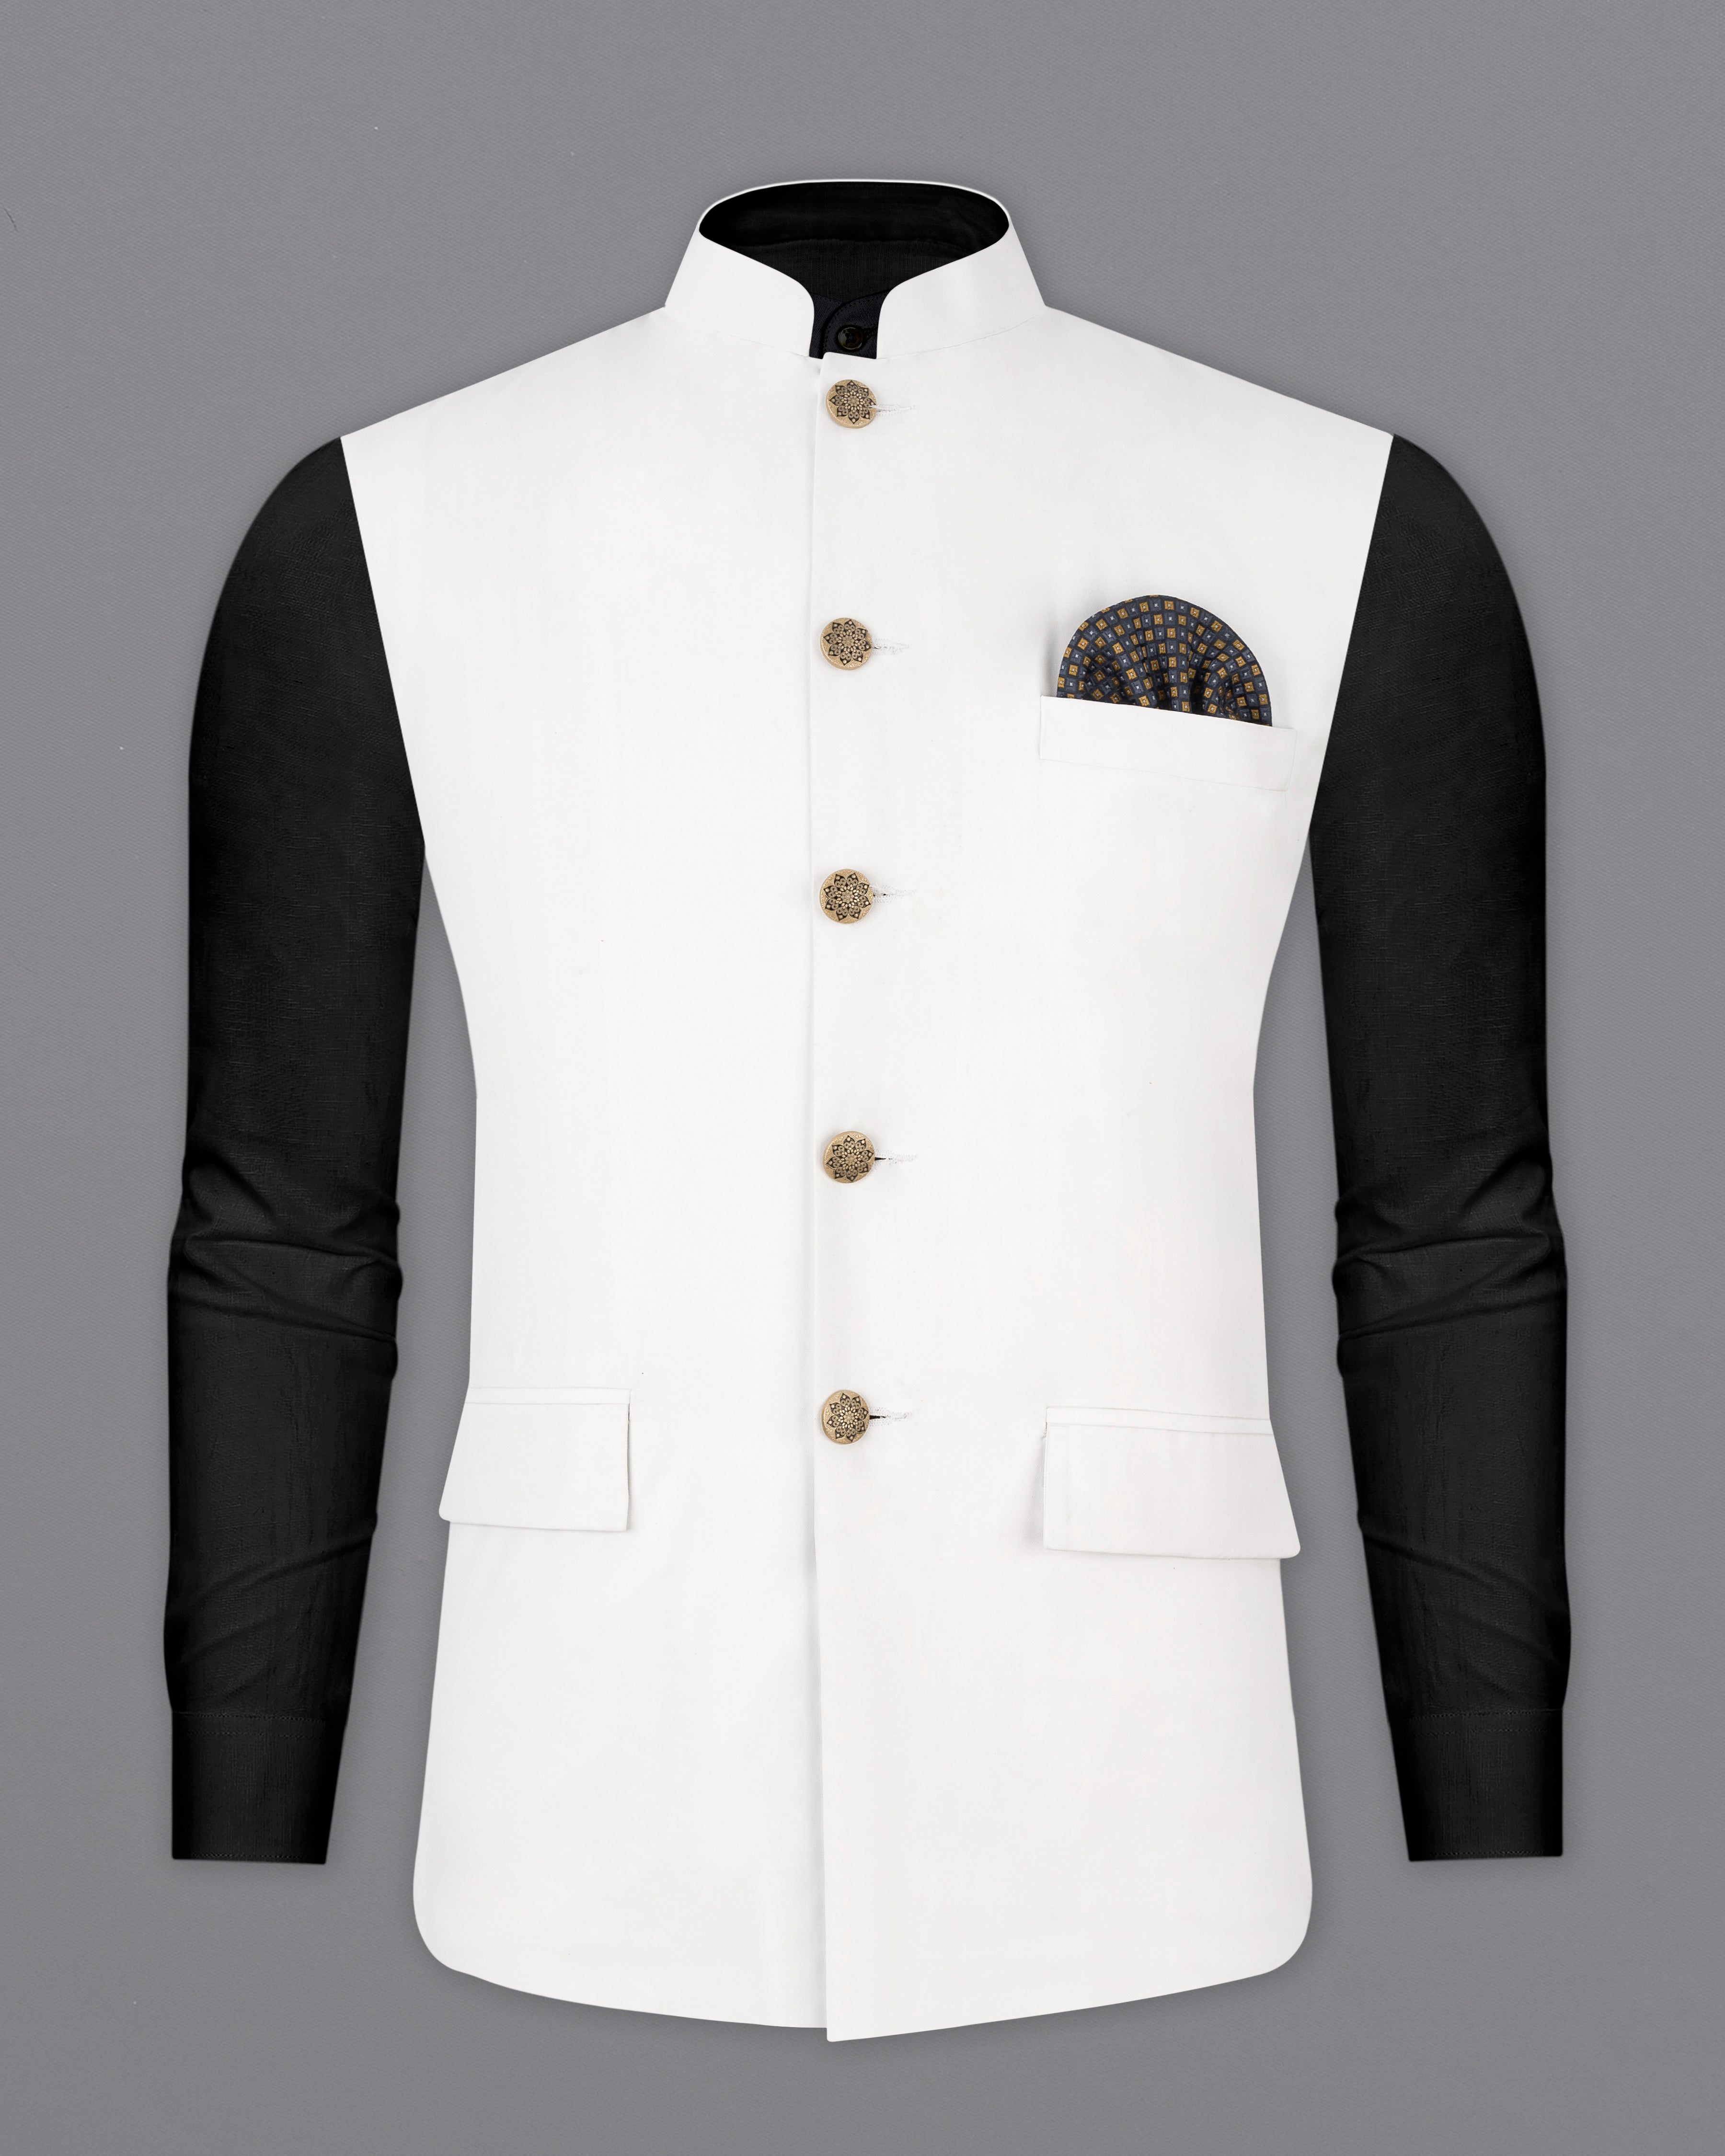 Bright White Premium Nehru Jacket WC2546-38, WC2546-39, WC2546-40, WC2546-42, WC2546-44, WC2546-46, WC2546-48, WC2546-50, WC2546-52